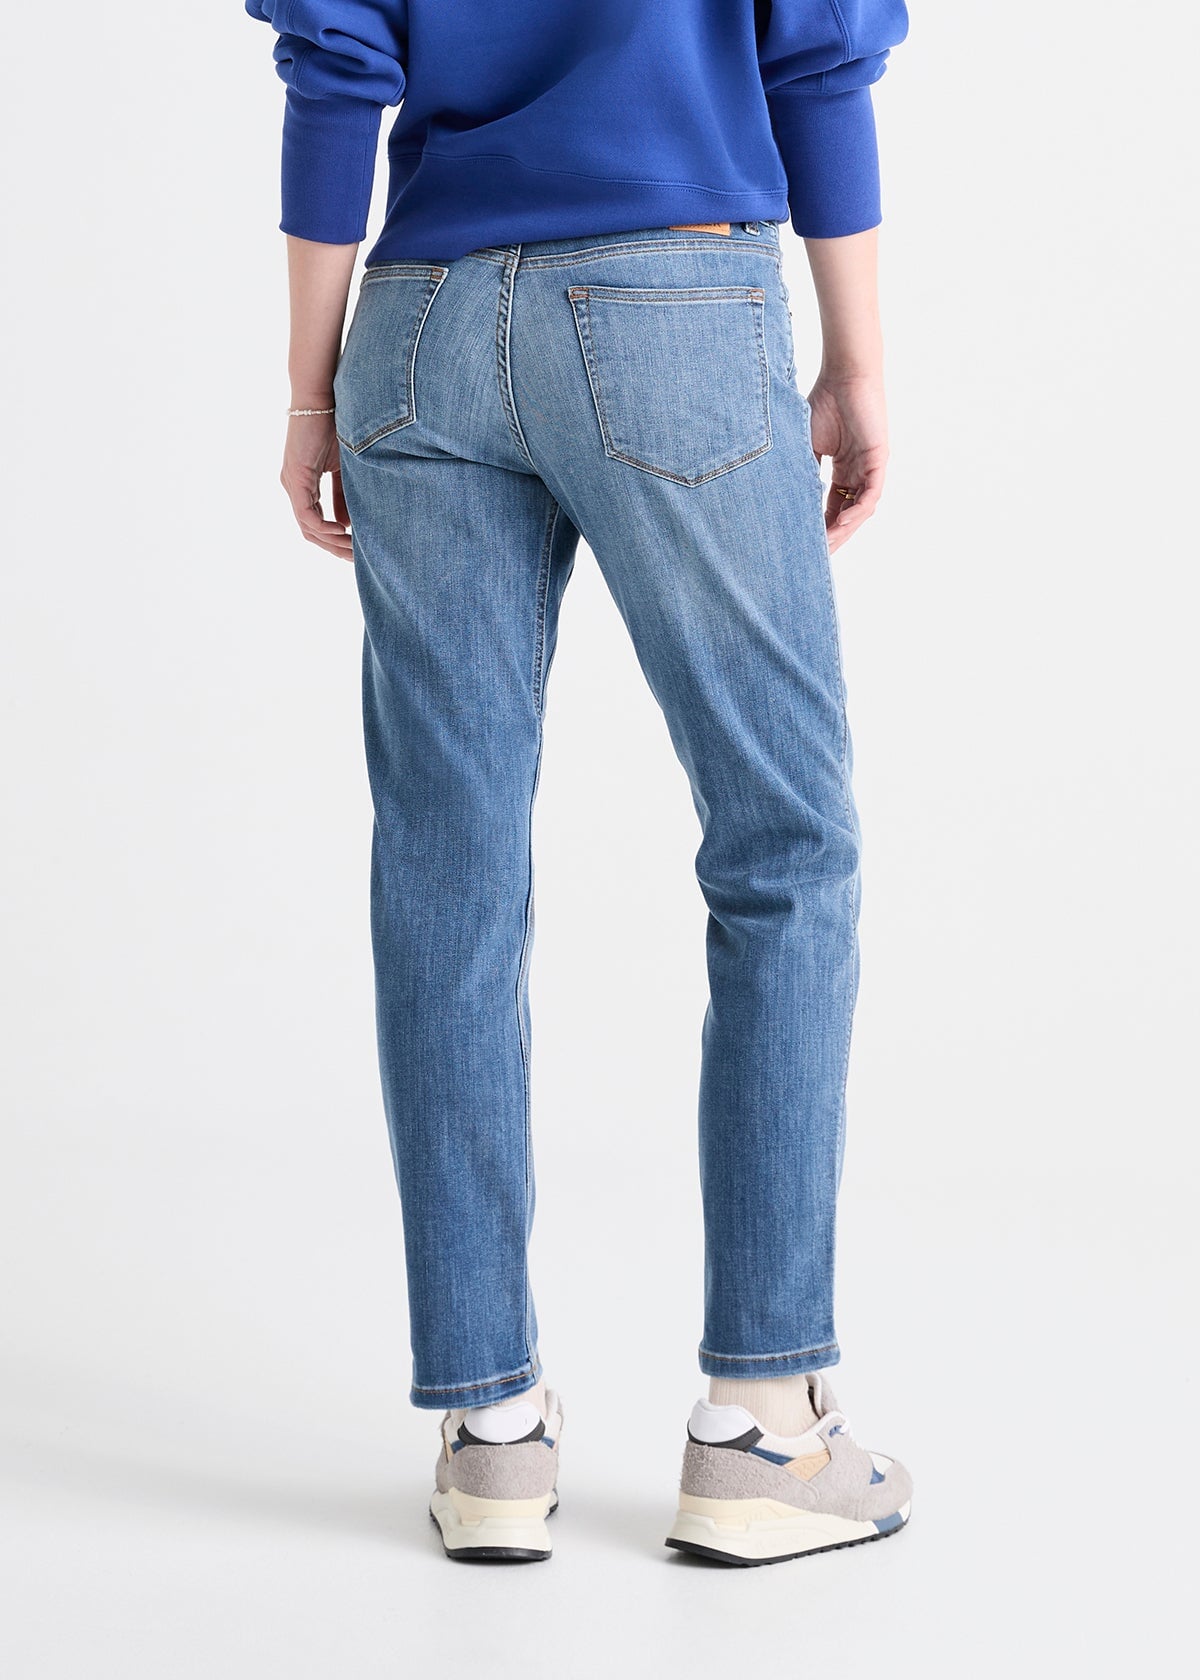 90s Boyfriend Fit High Jeans - Denim blue - Ladies | H&M IN